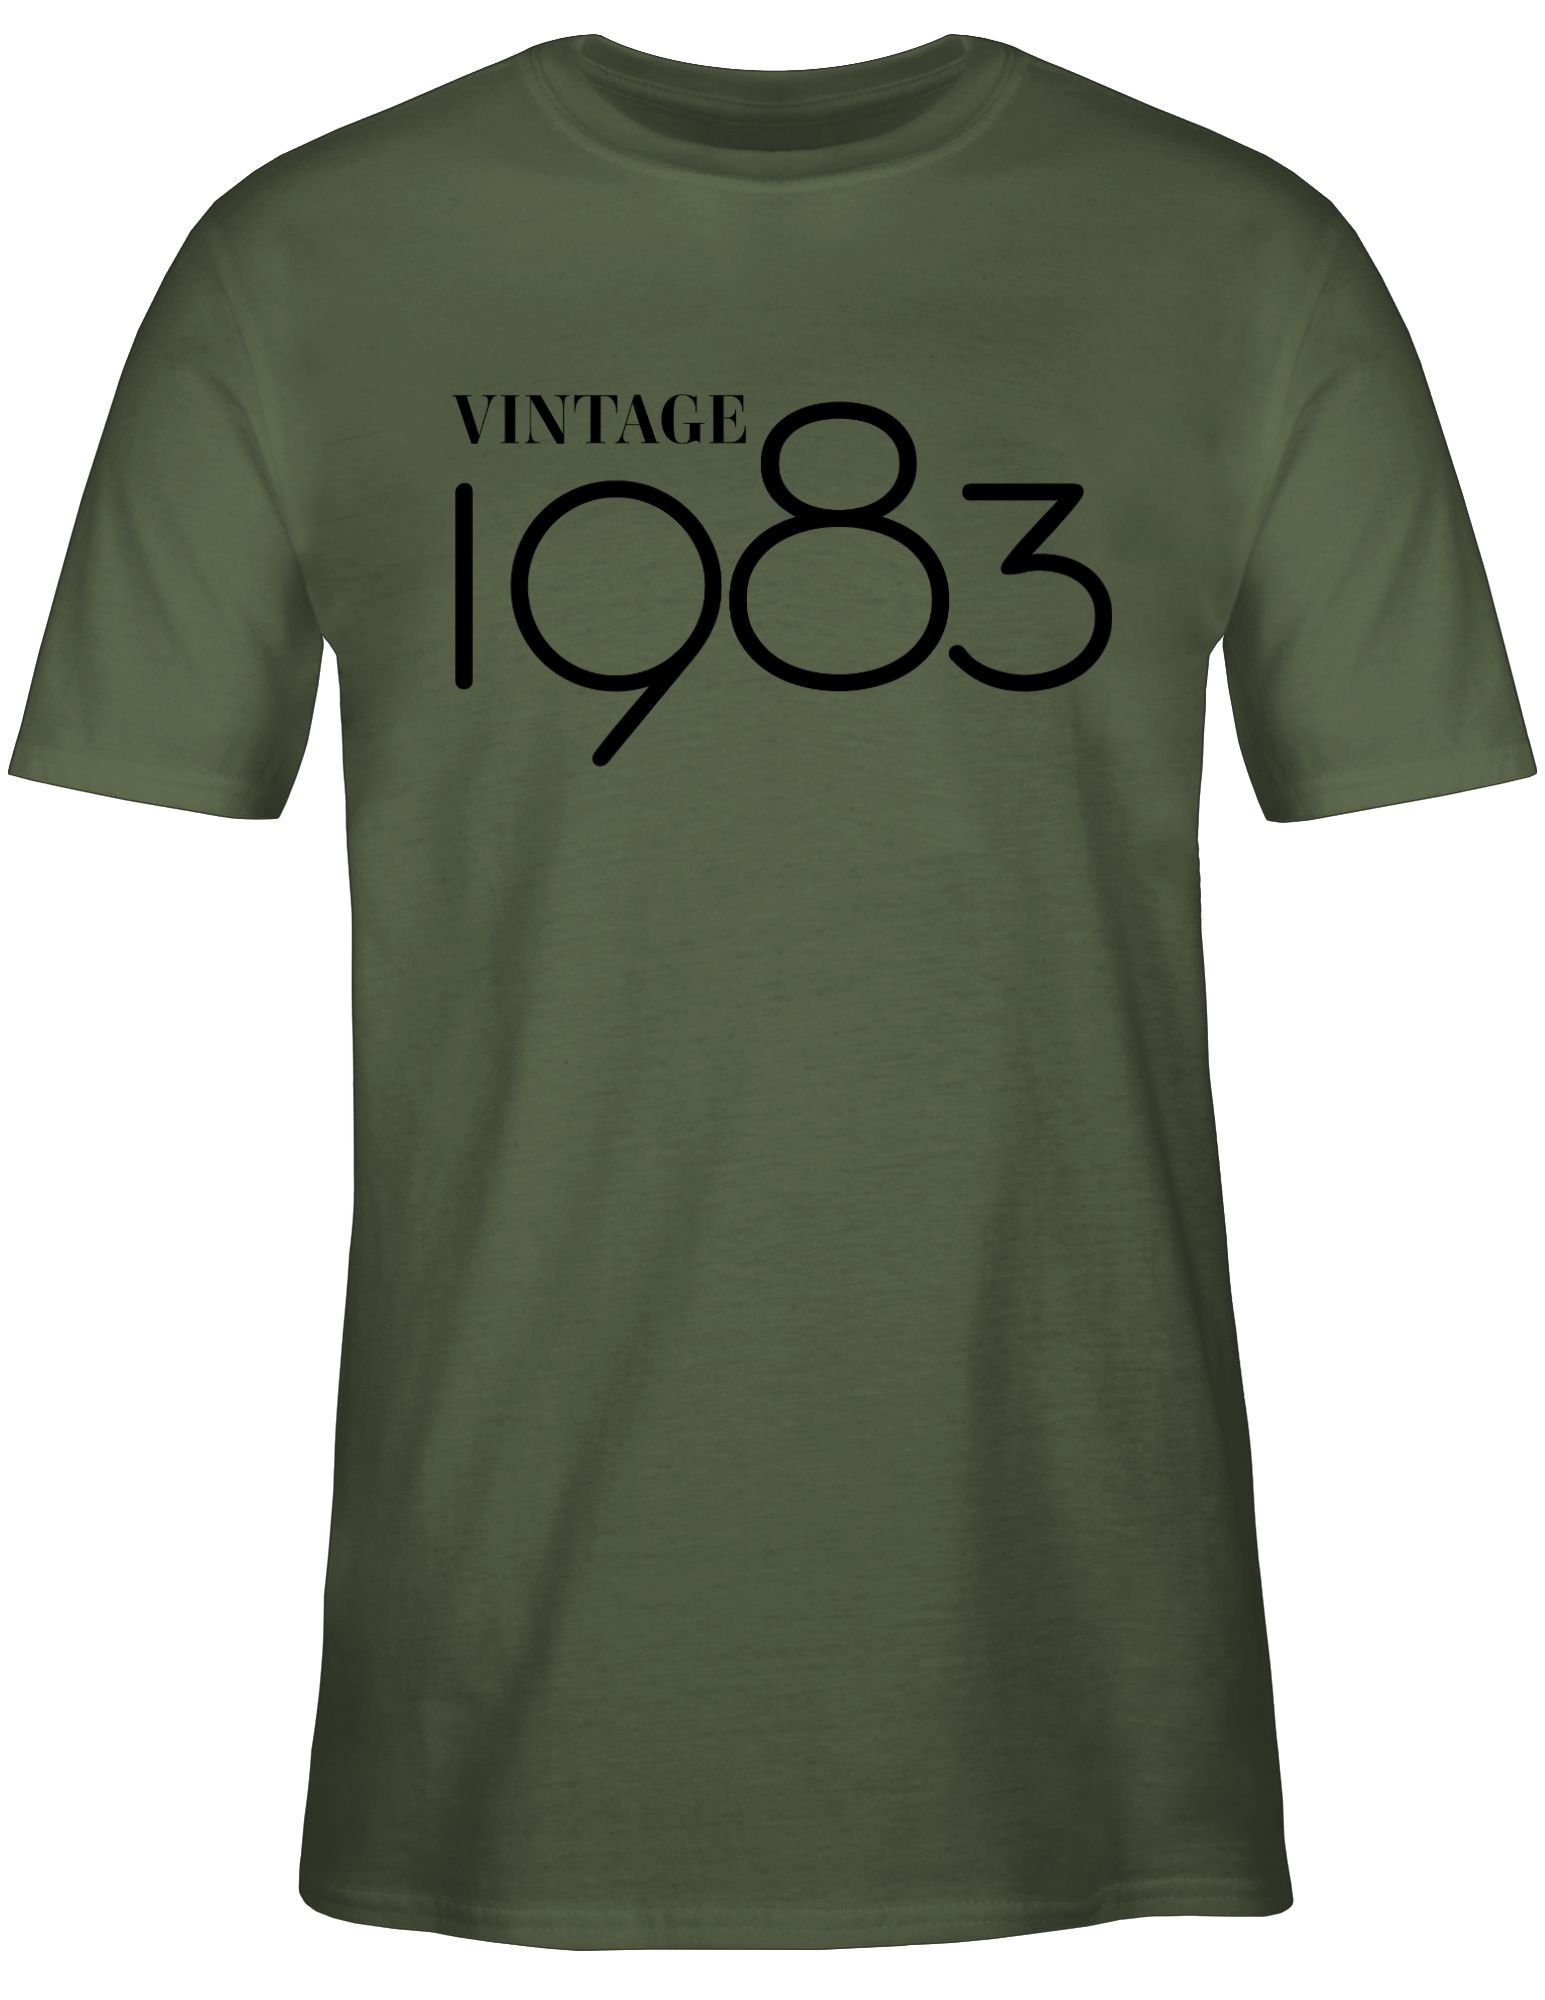 Shirtracer T-Shirt Vintage Grün Geburtstag Army 01 schwarz 40. 1983